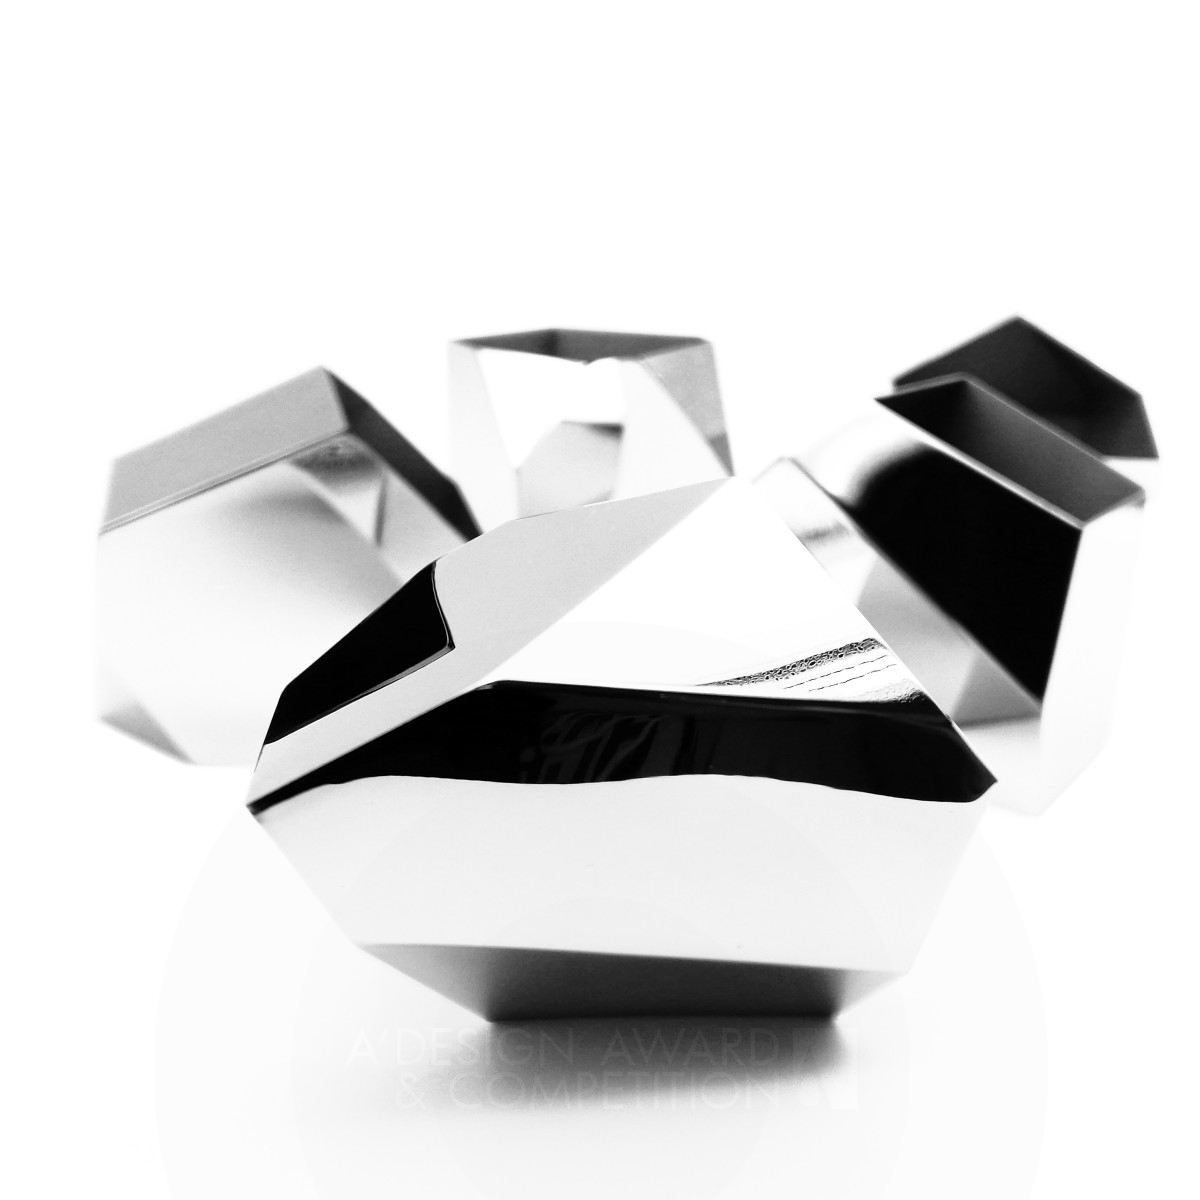 The Things: Una collezione di ciotole poligonali in acciaio inossidabile